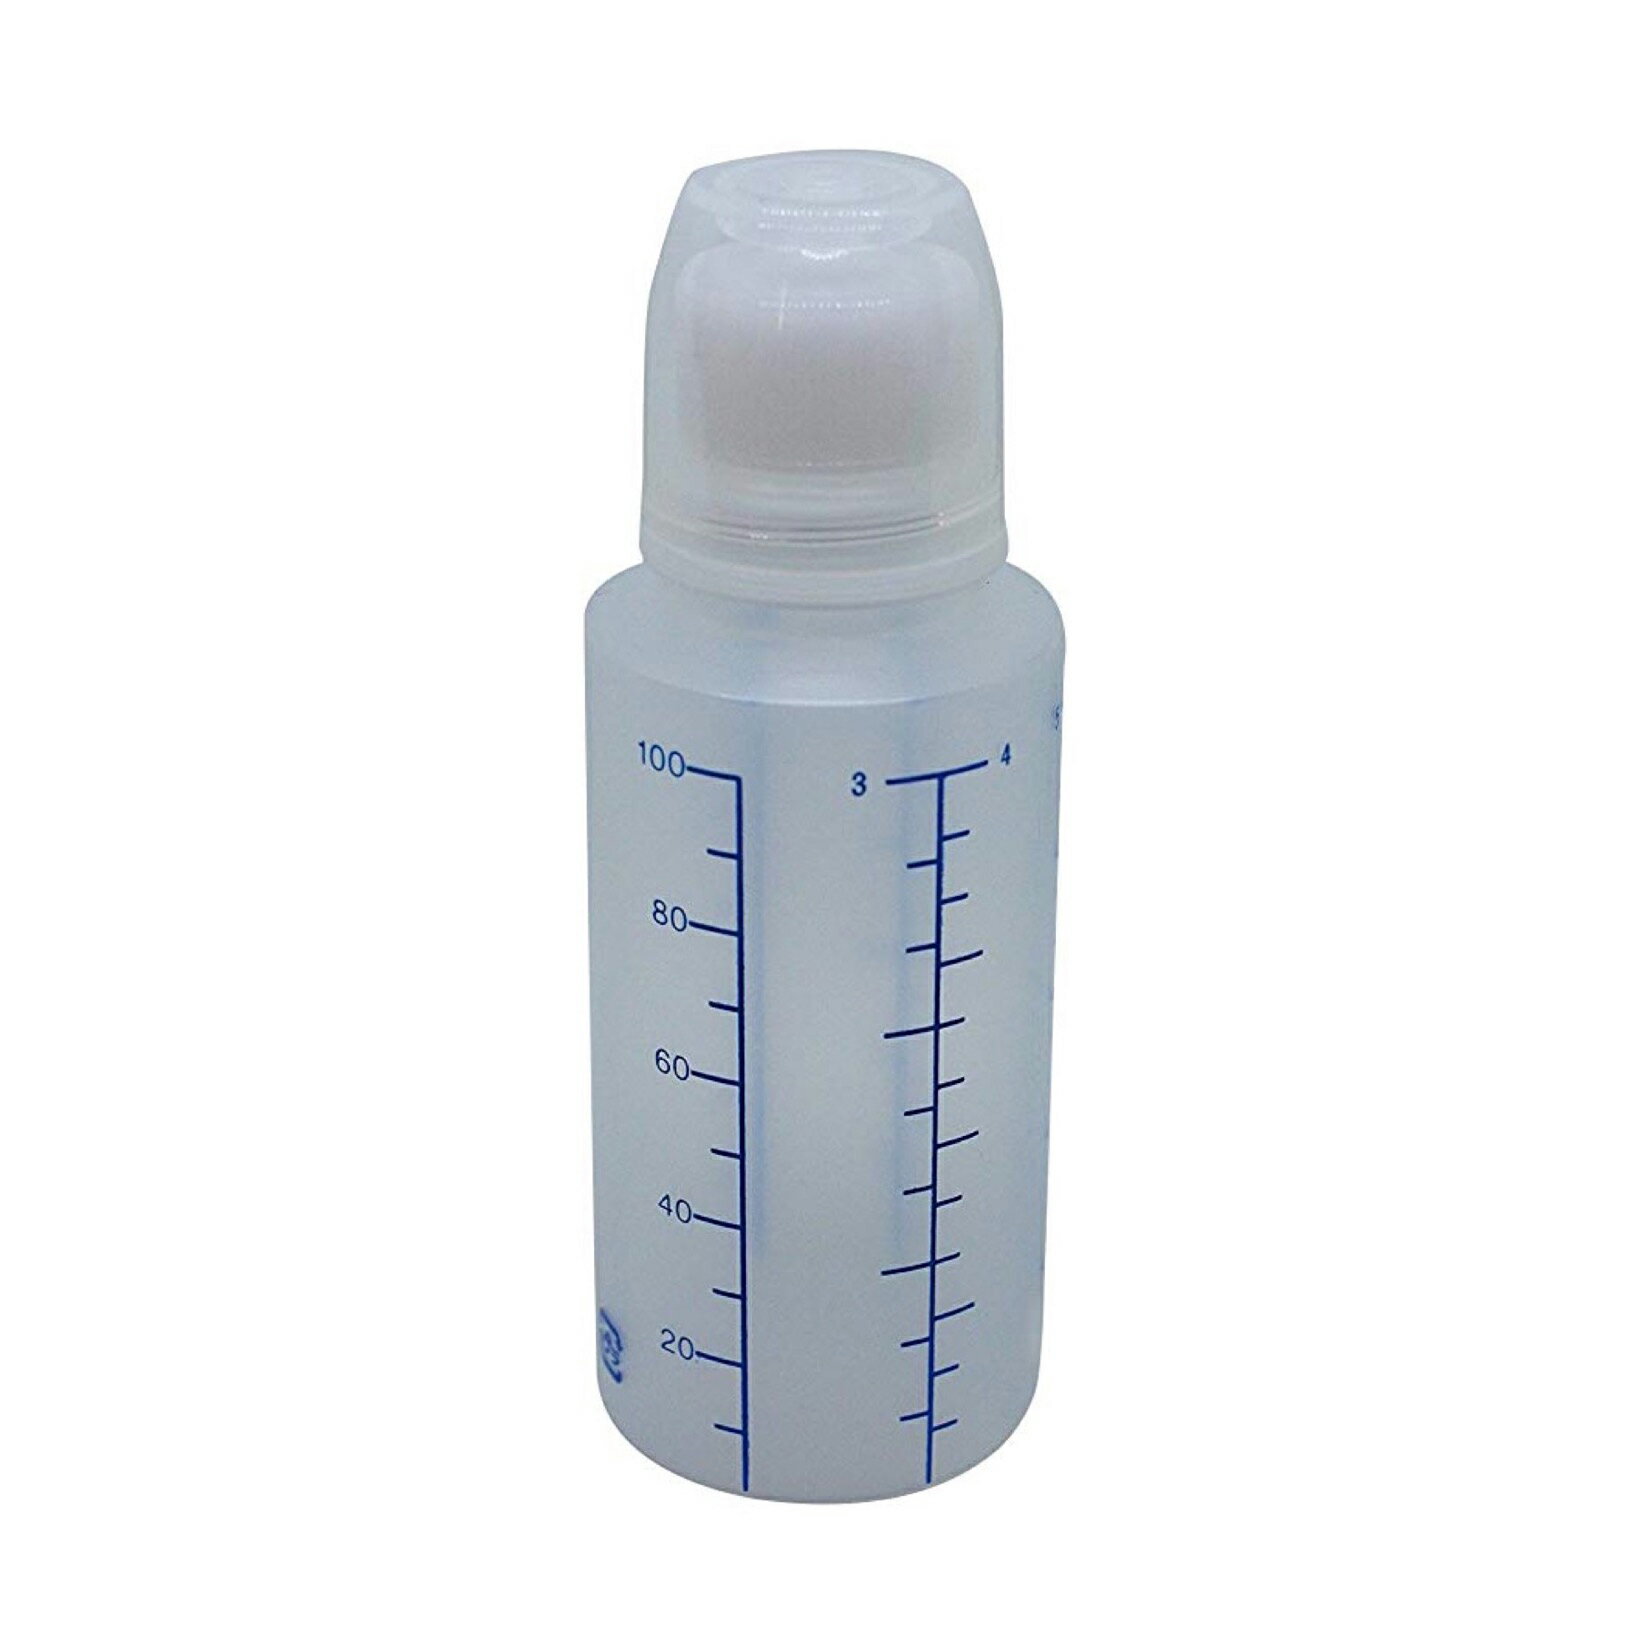 エムアイケミカル 投薬瓶Mオール（滅菌済）100CC(10ポンX18フクロイリ) 08-291006 1